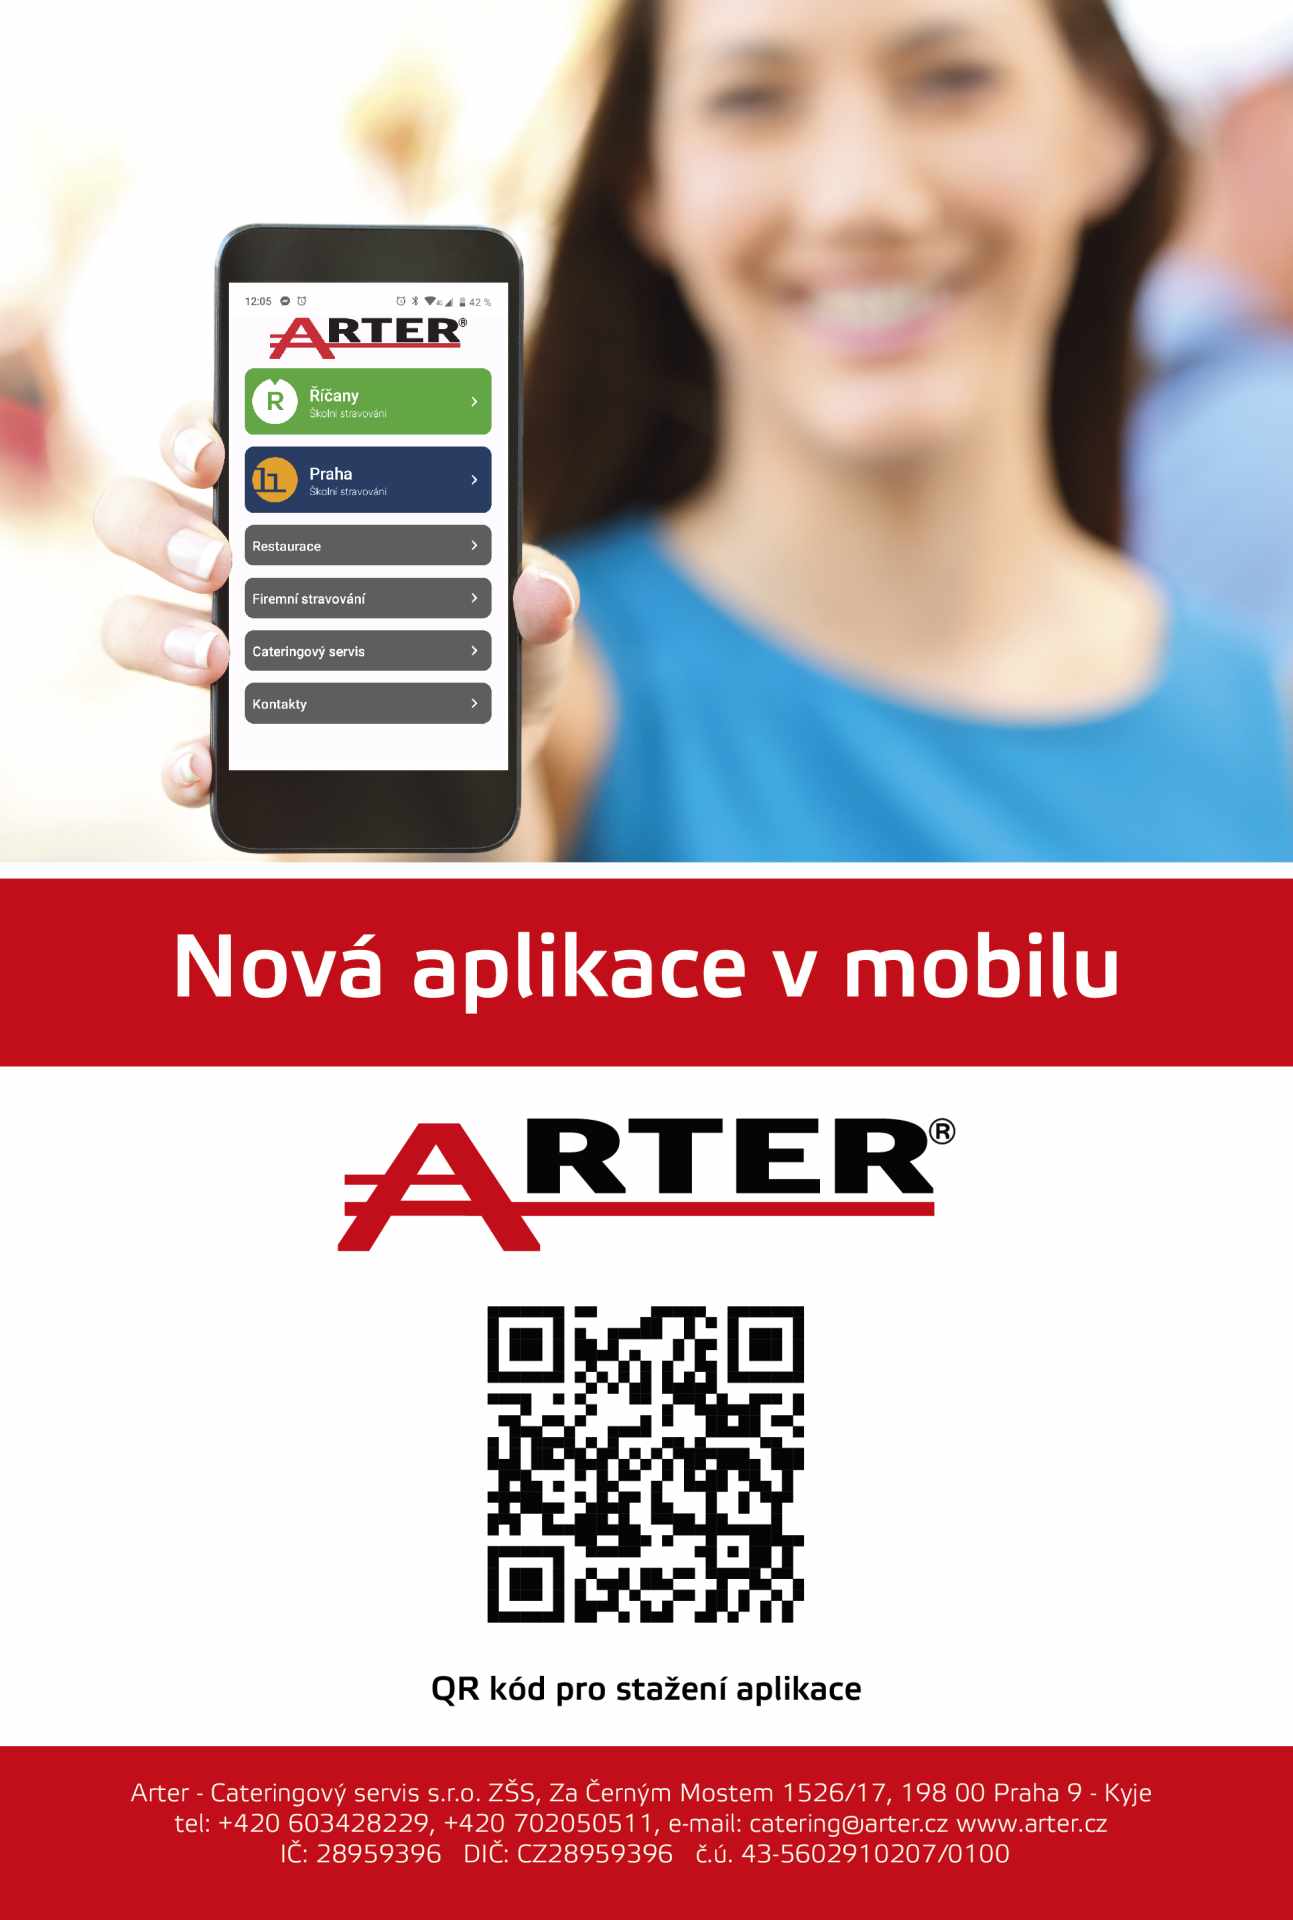 Aplikace ARTER